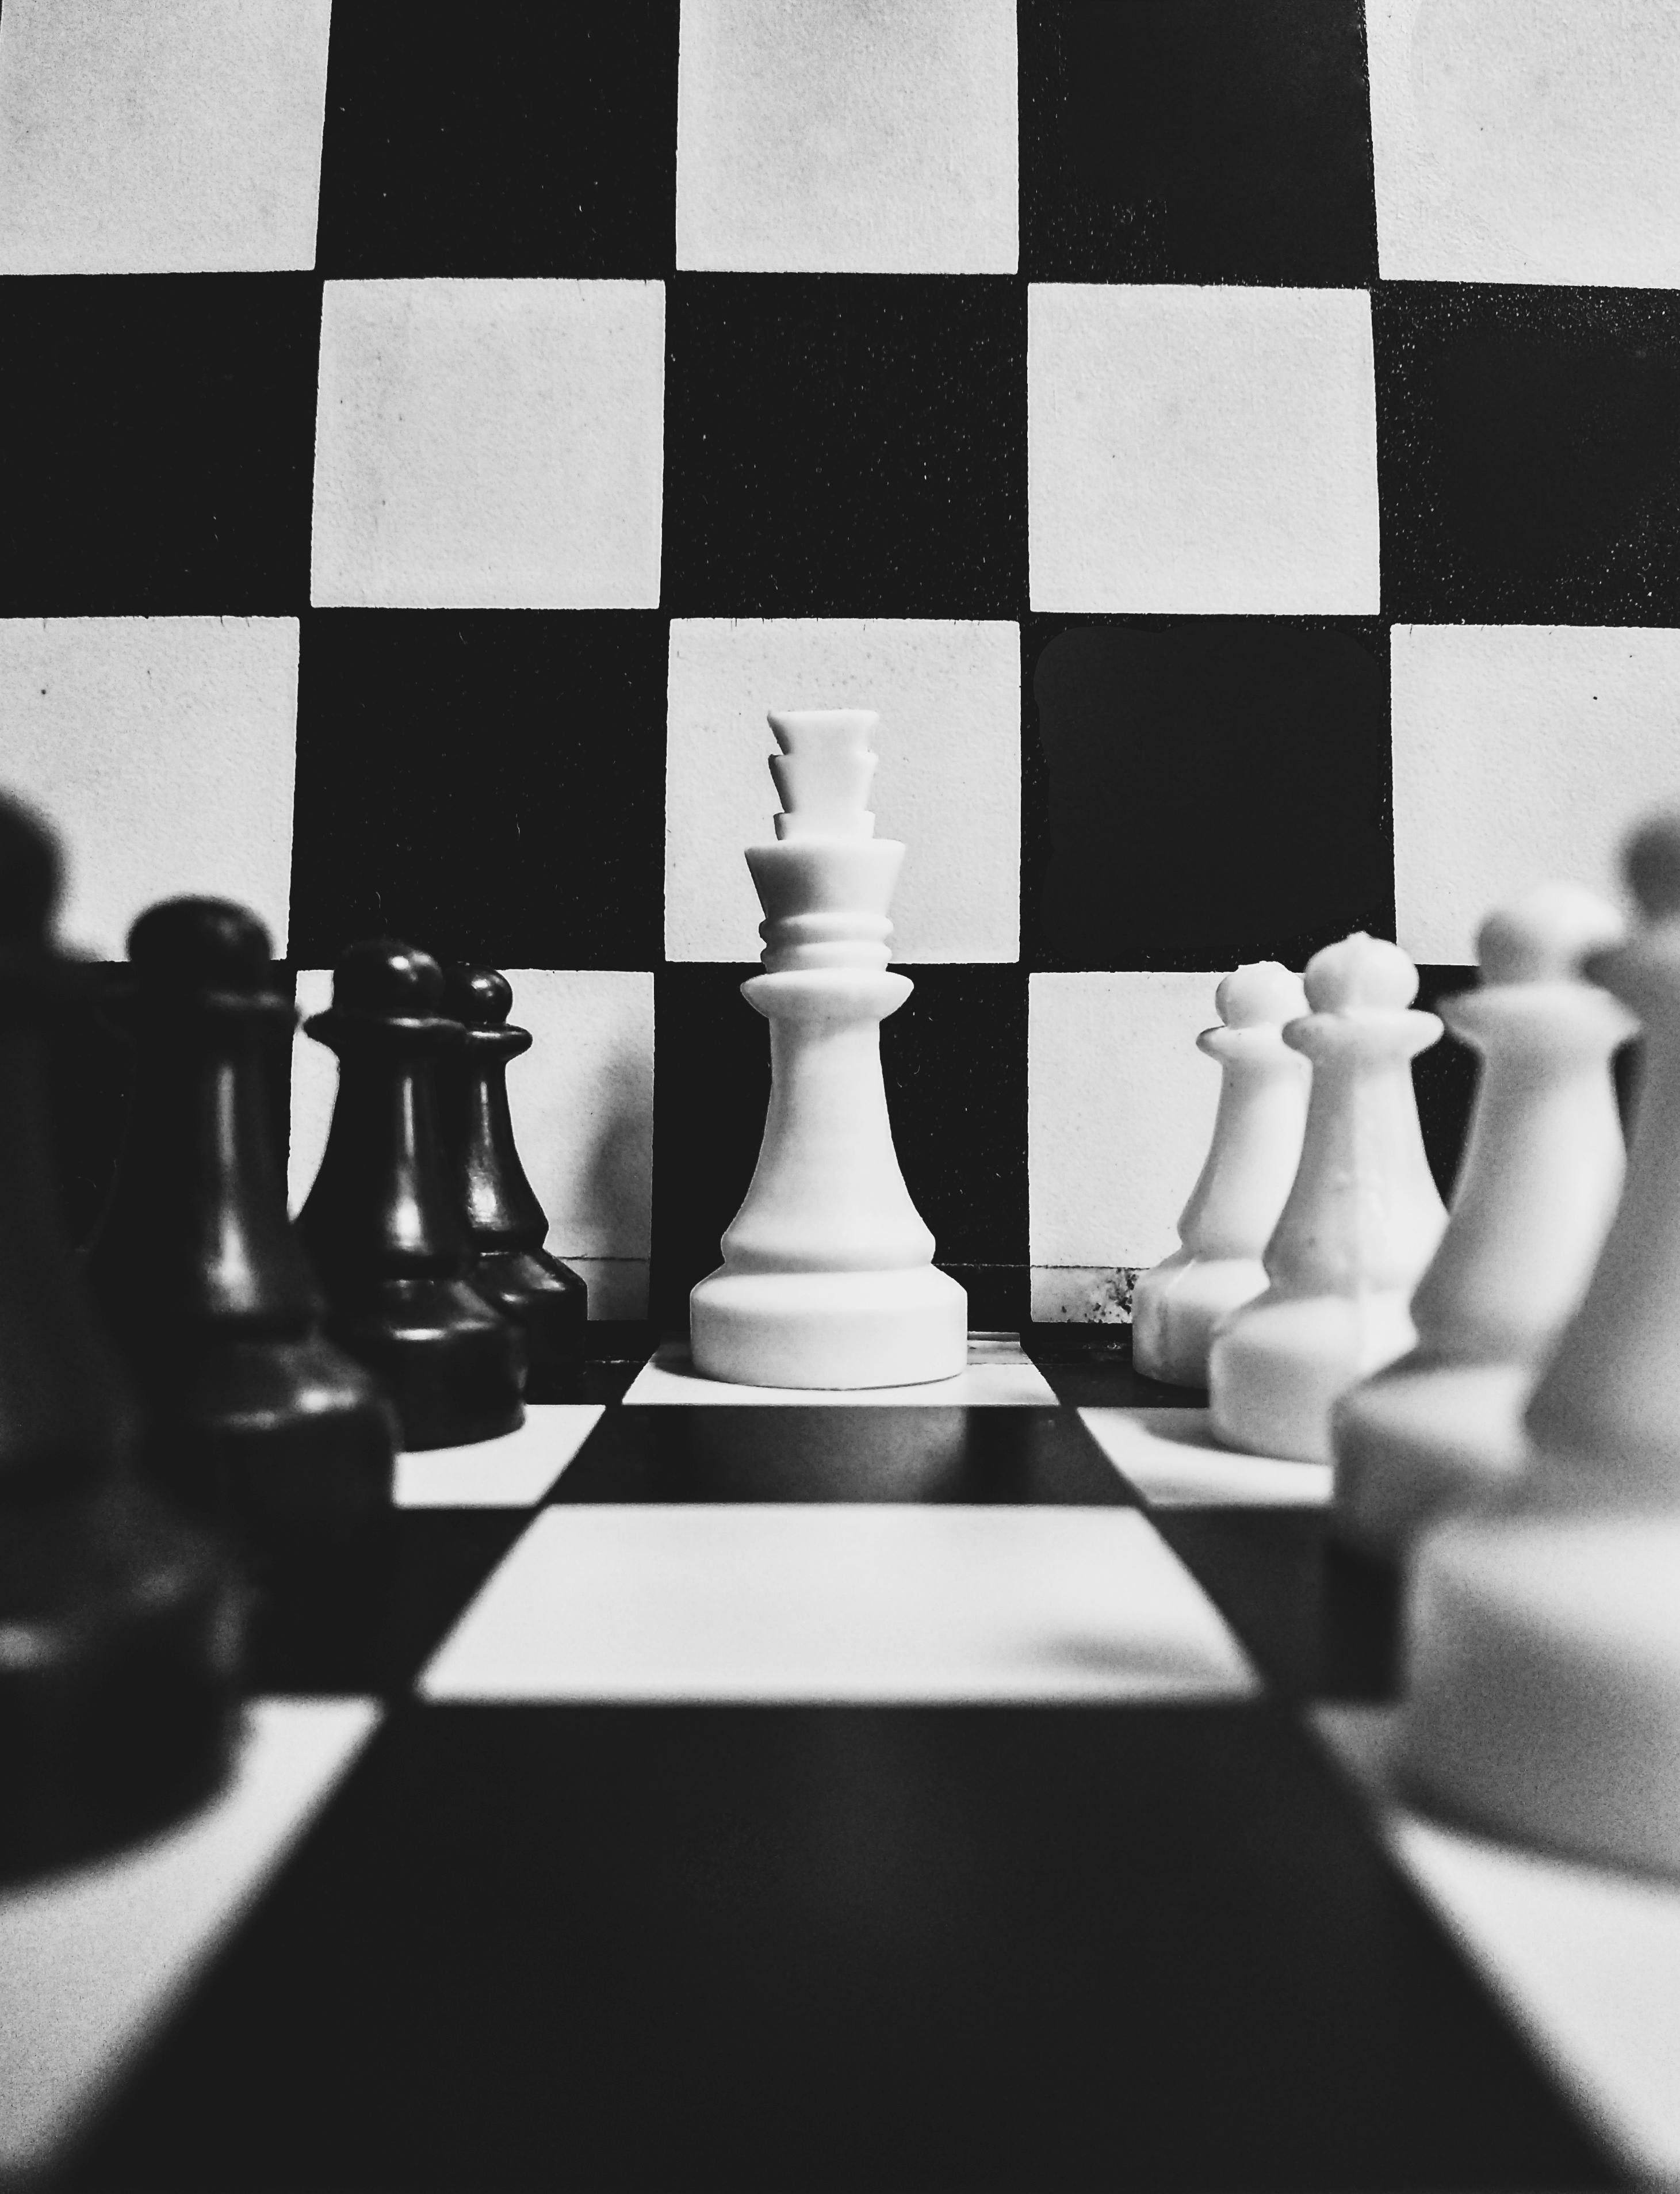 3D Chess Board - wallpaper